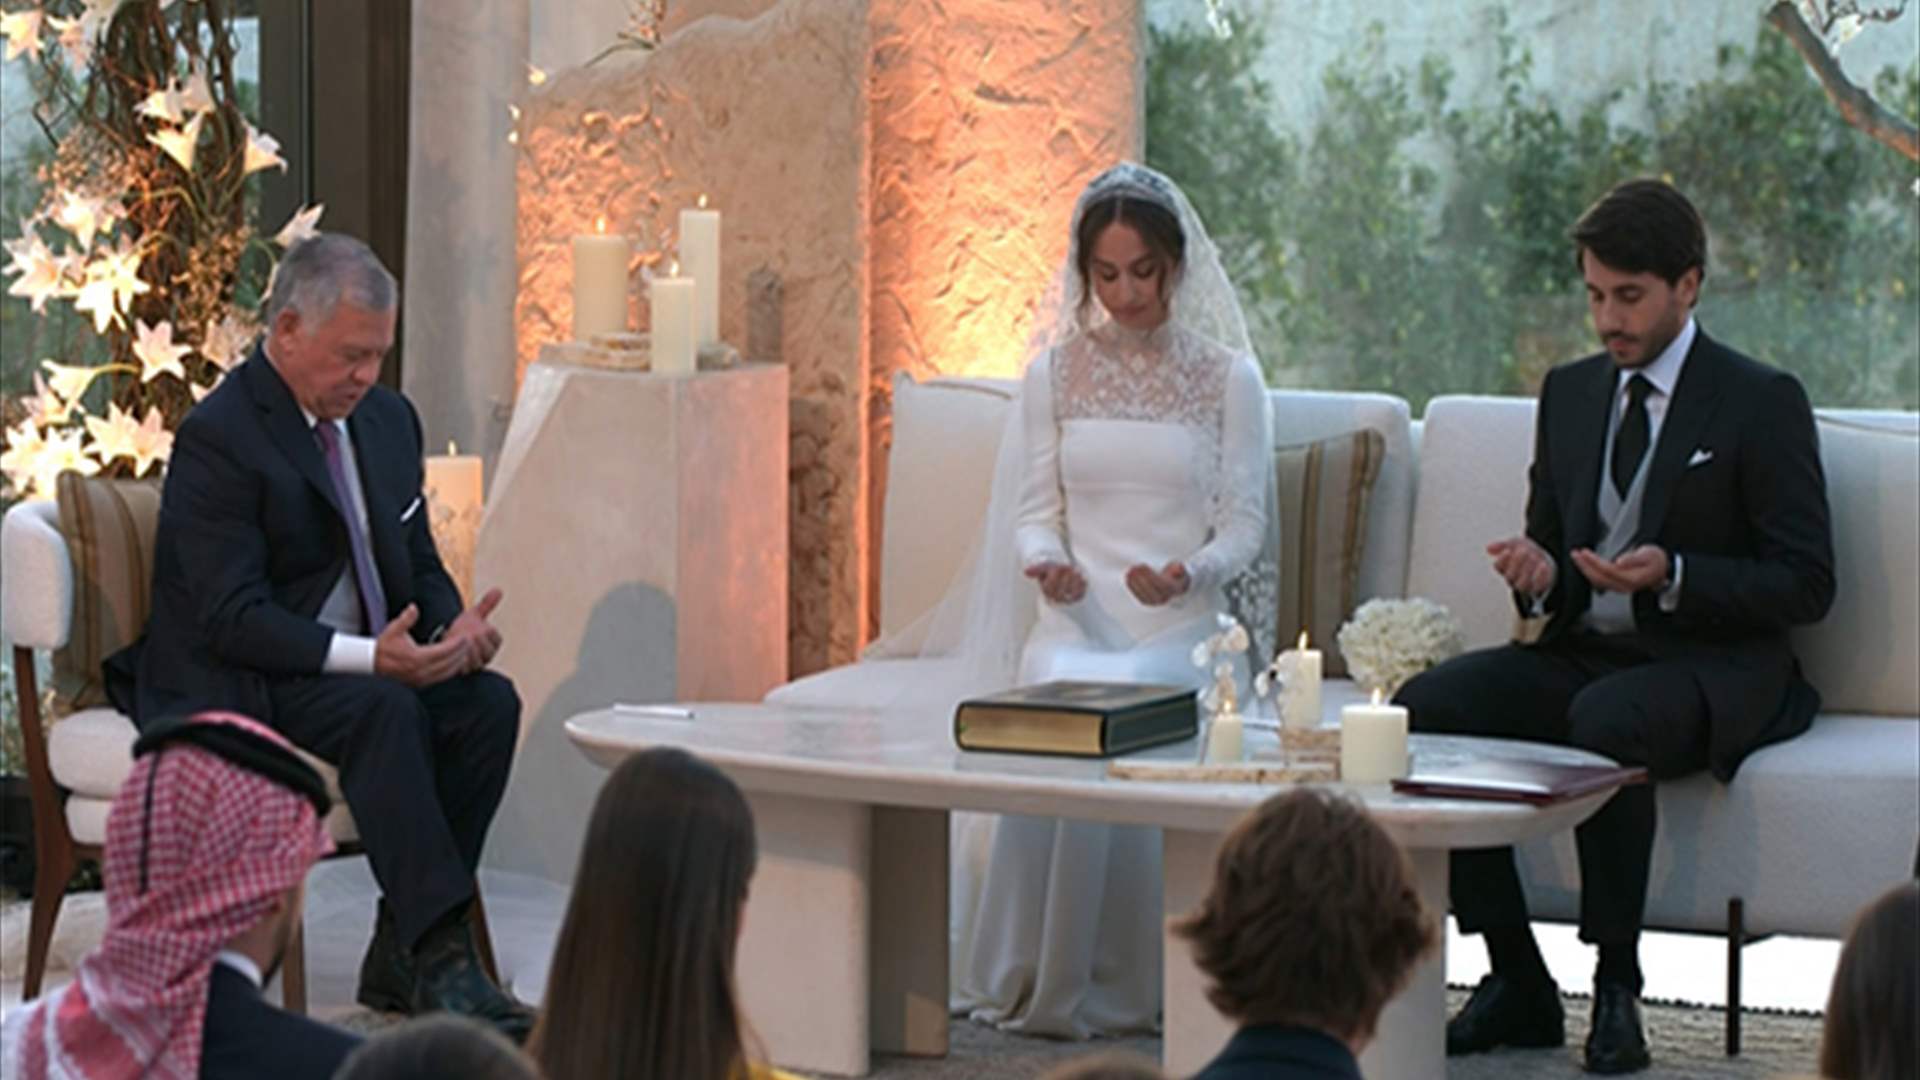  العائلة الهاشمية تُقيم حفل زفاف الأميرة إيمان بنت عبدالله الثاني وسط حضورٍ واسع